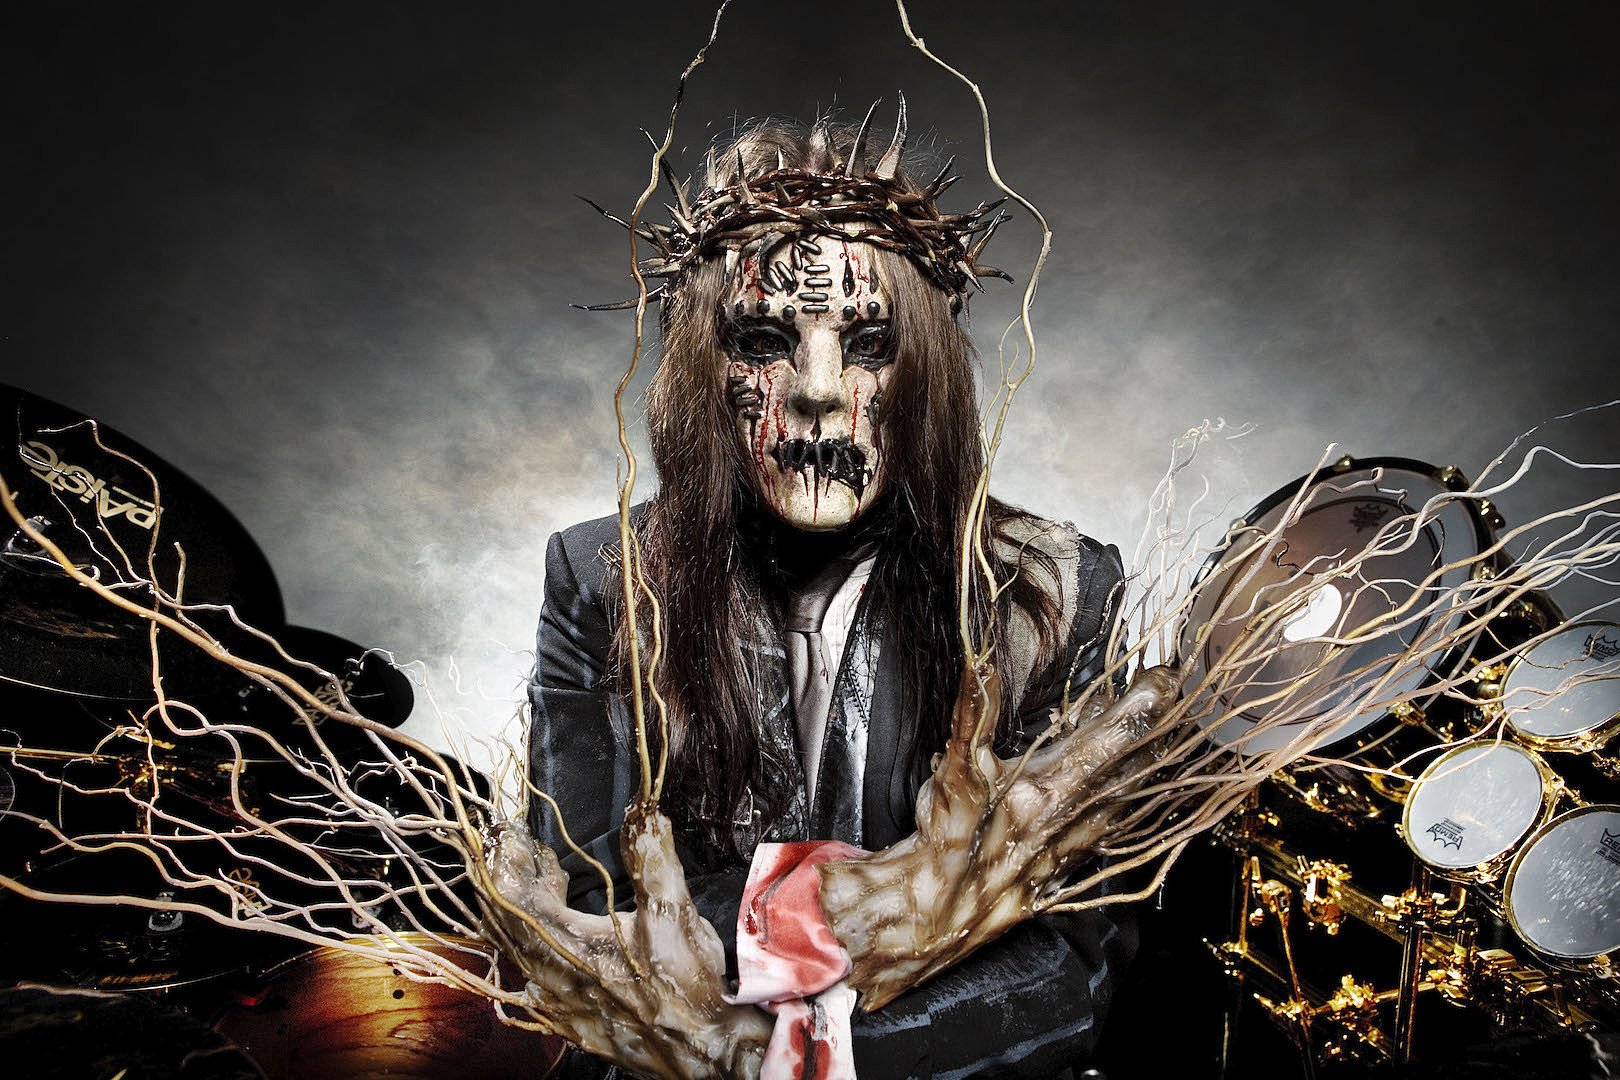  Toboşarul Joey Jordison, cofondator al trupei Slipknot, a murit la vârsta de 46 de ani